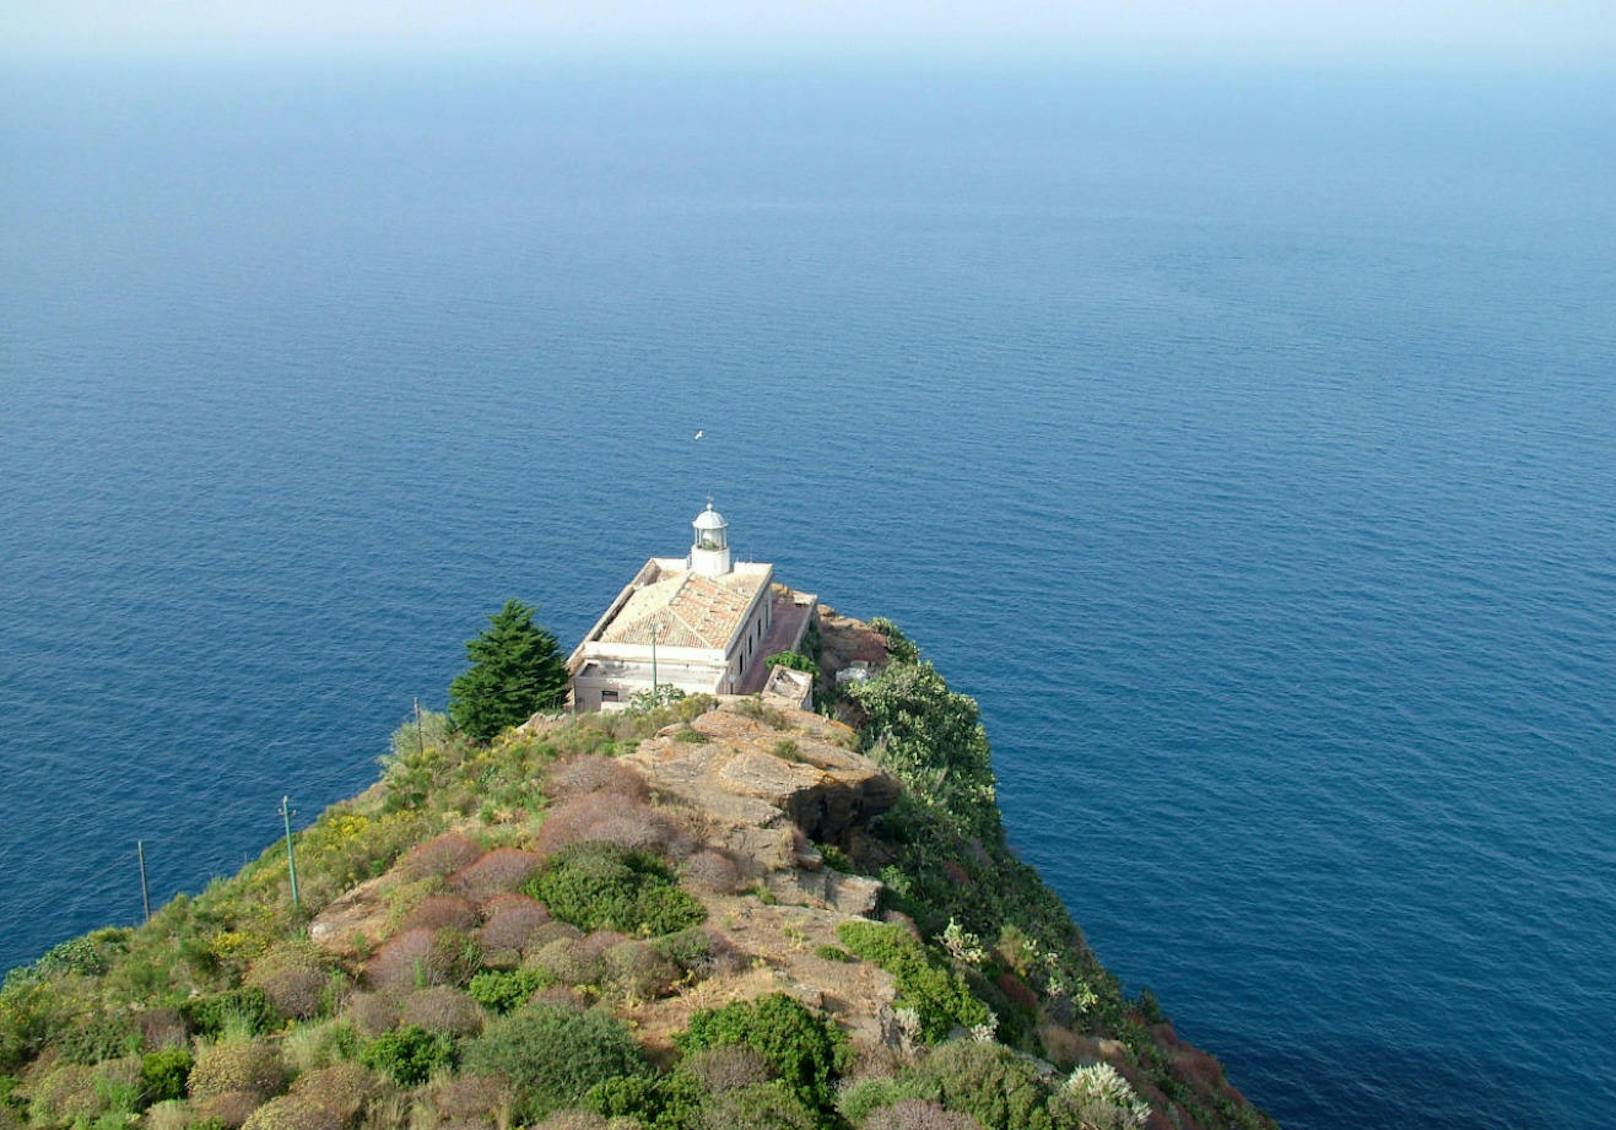 <b>Il Faro di Punta Omo Morto</b>
Die beste Aussicht gibt es aber hier: In Palermo (Sizilien) steht dieser Leuchtturm, den Sie für maximal 19 Jahre mieten könnten. Er hat 883 Quadratmeter und Bewilligungen für touristische Gewerbe, Schulen oder Werbung.